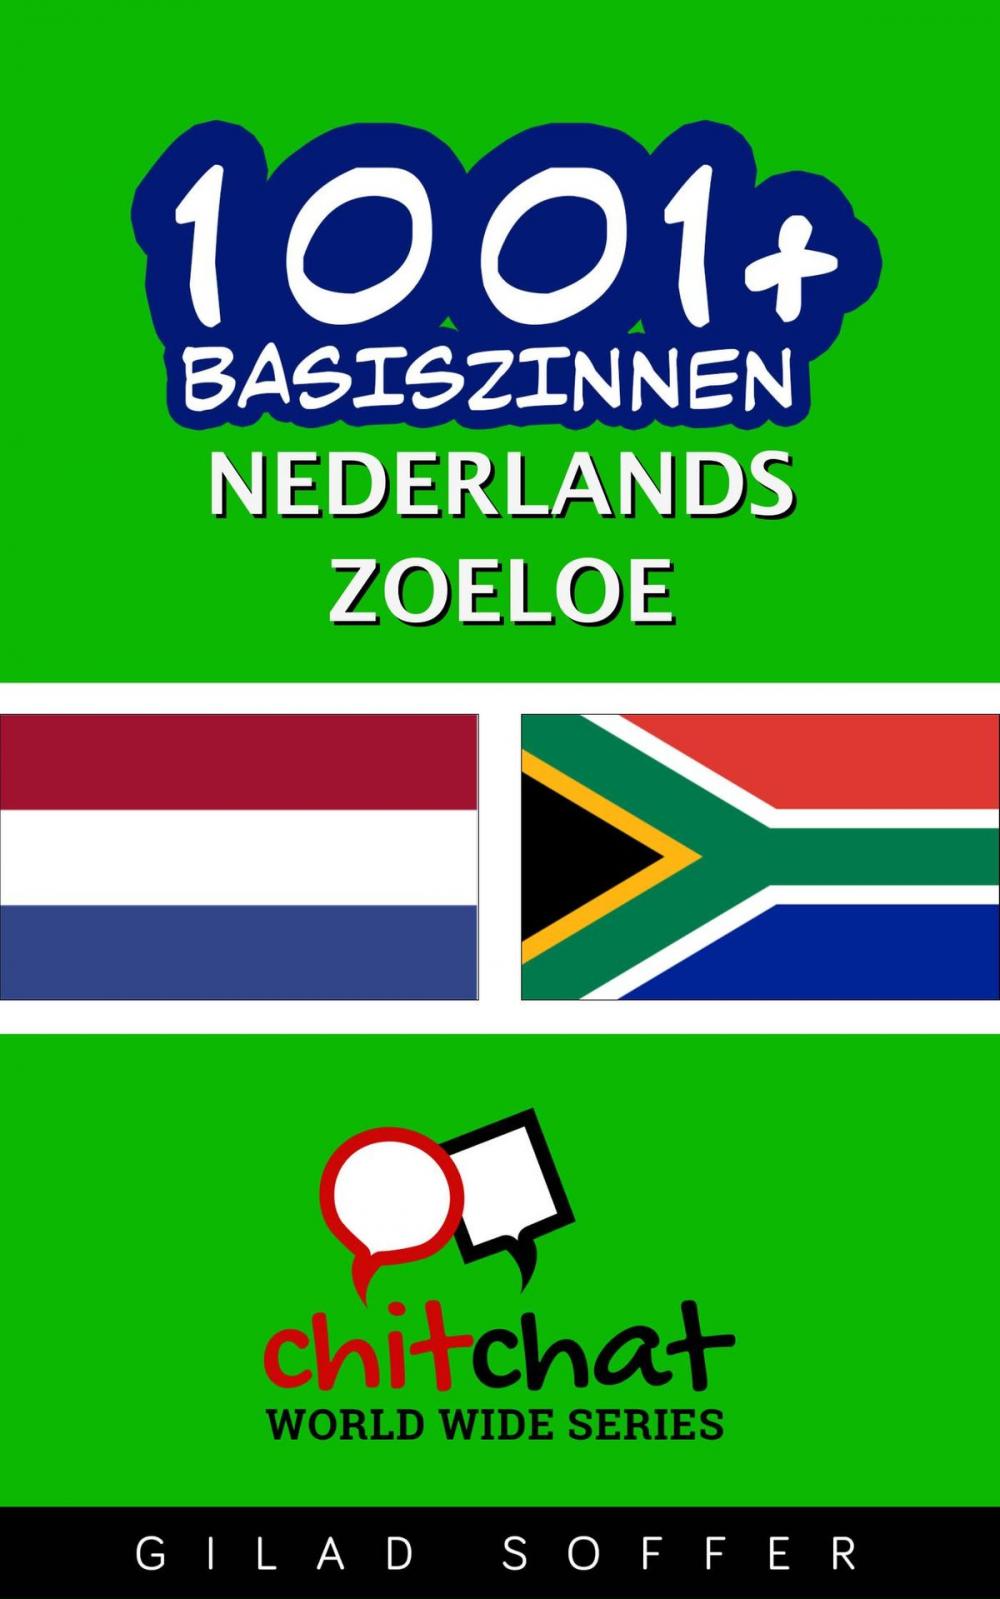 Big bigCover of 1001+ basiszinnen nederlands - Zoeloe